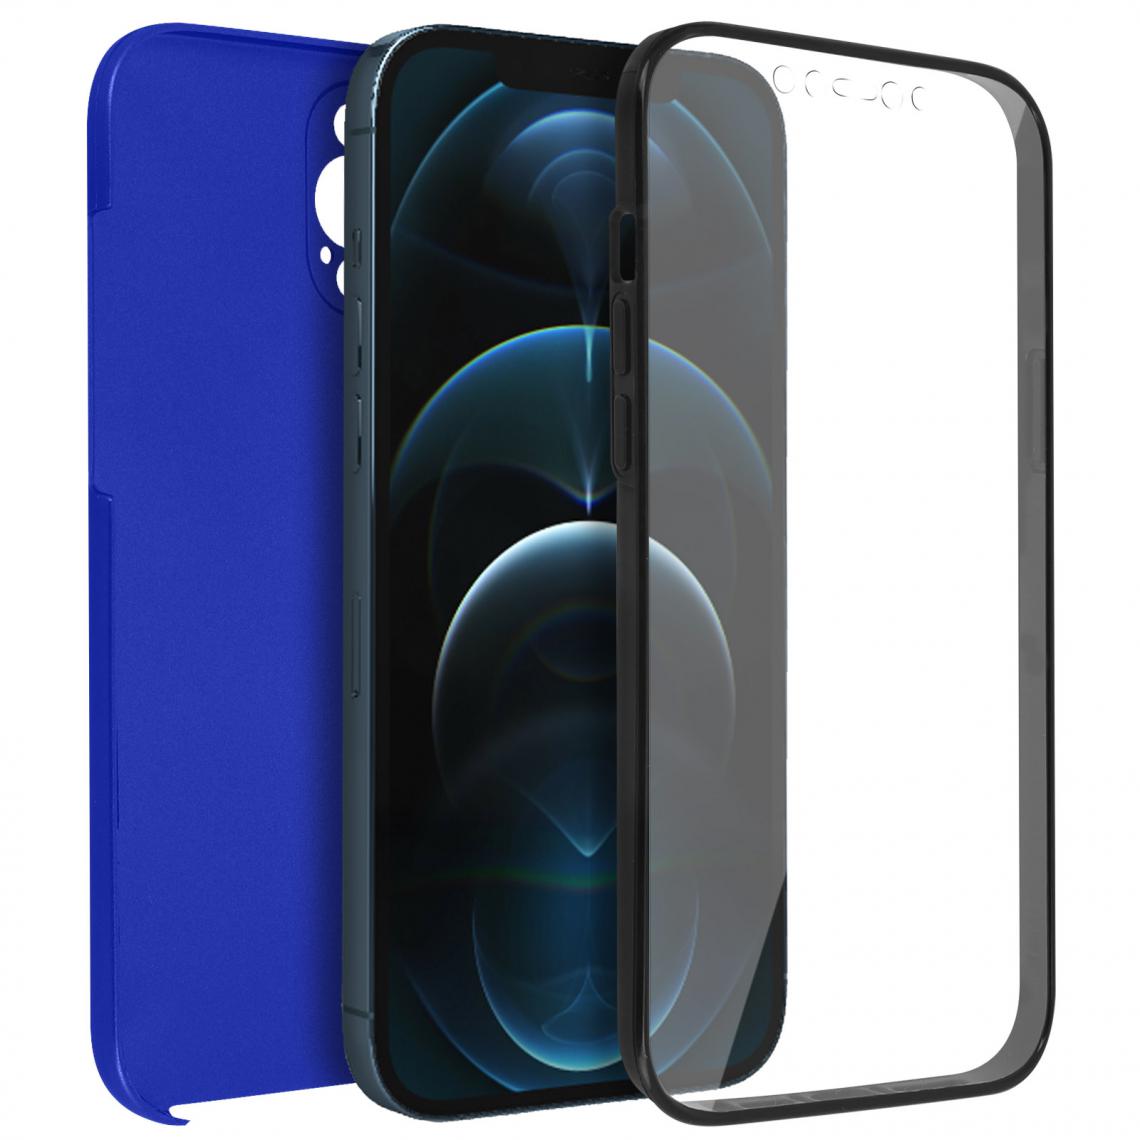 Avizar - Coque Apple iPhone 12 Pro Max Protection Arrière Rigide et Avant Souple bleu - Coque, étui smartphone